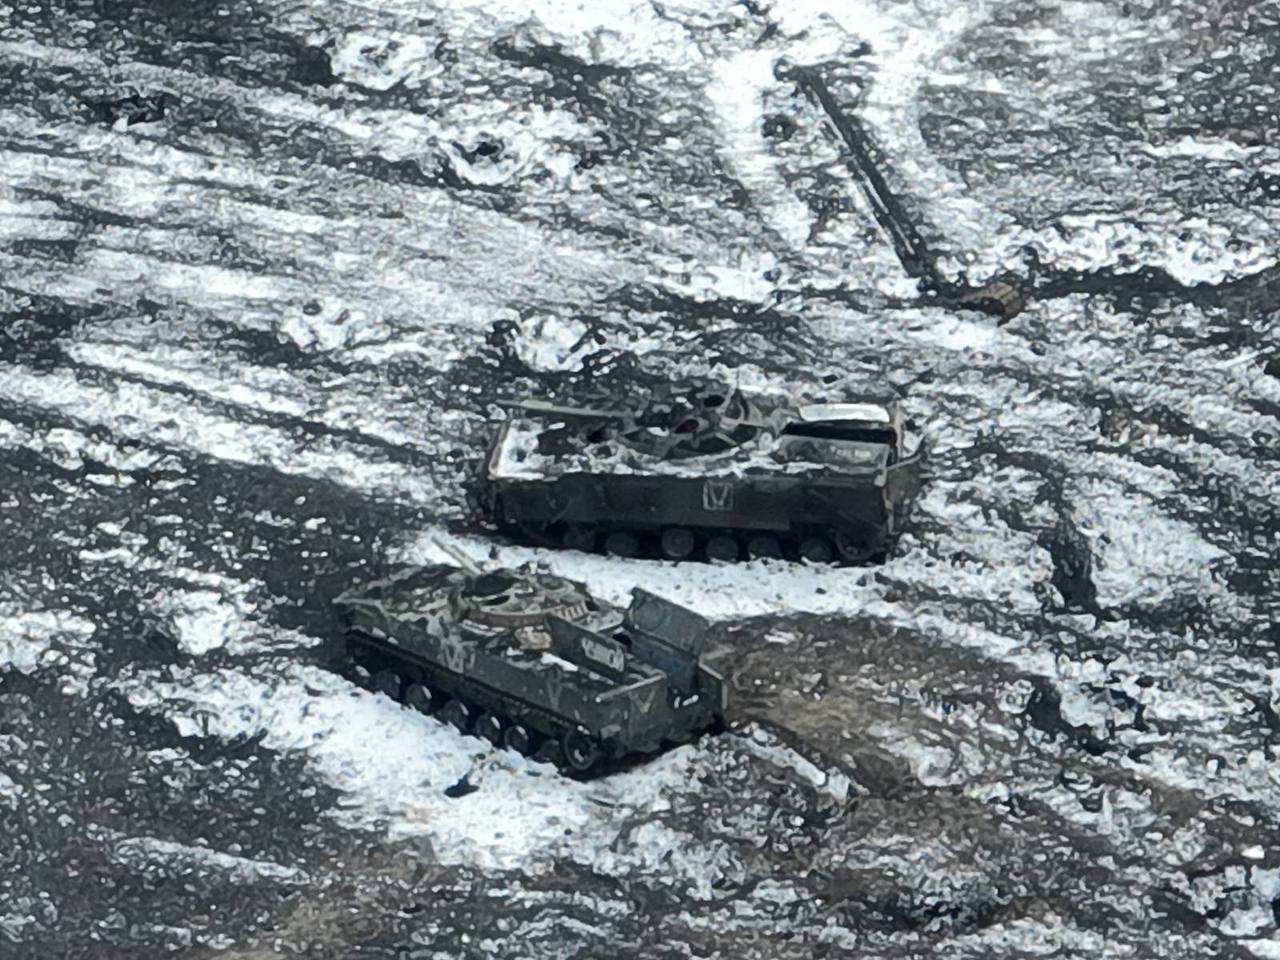 Les forces armées ukrainiennes ont détruit un convoi de matériel ennemi près d'Ugledar à l'aide de drones achetés à titre gracieux (photo)